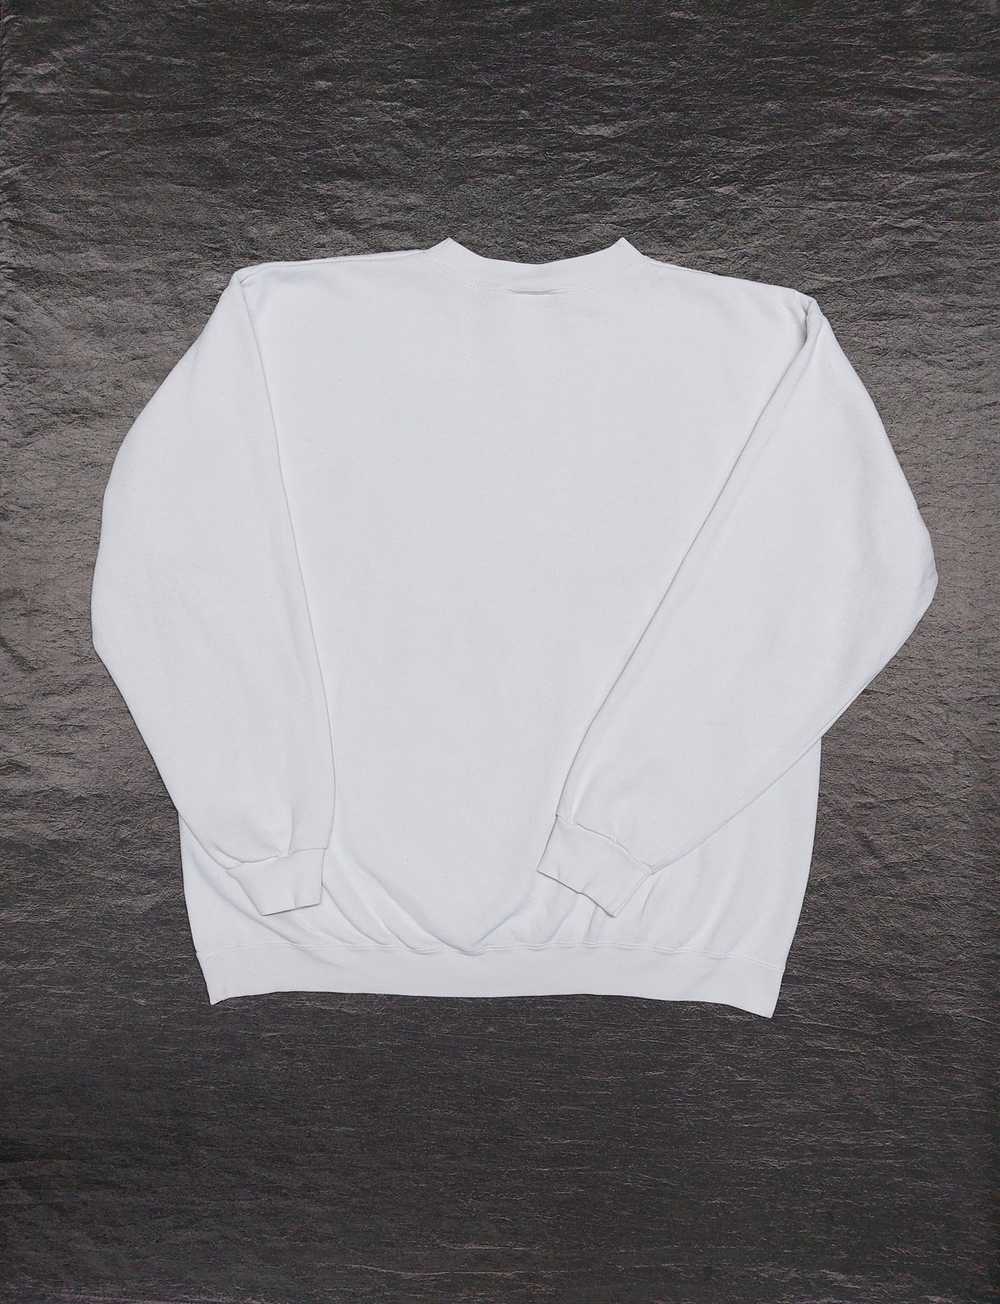 Art × Japanese Brand × Streetwear Vintage Sweatsh… - image 5